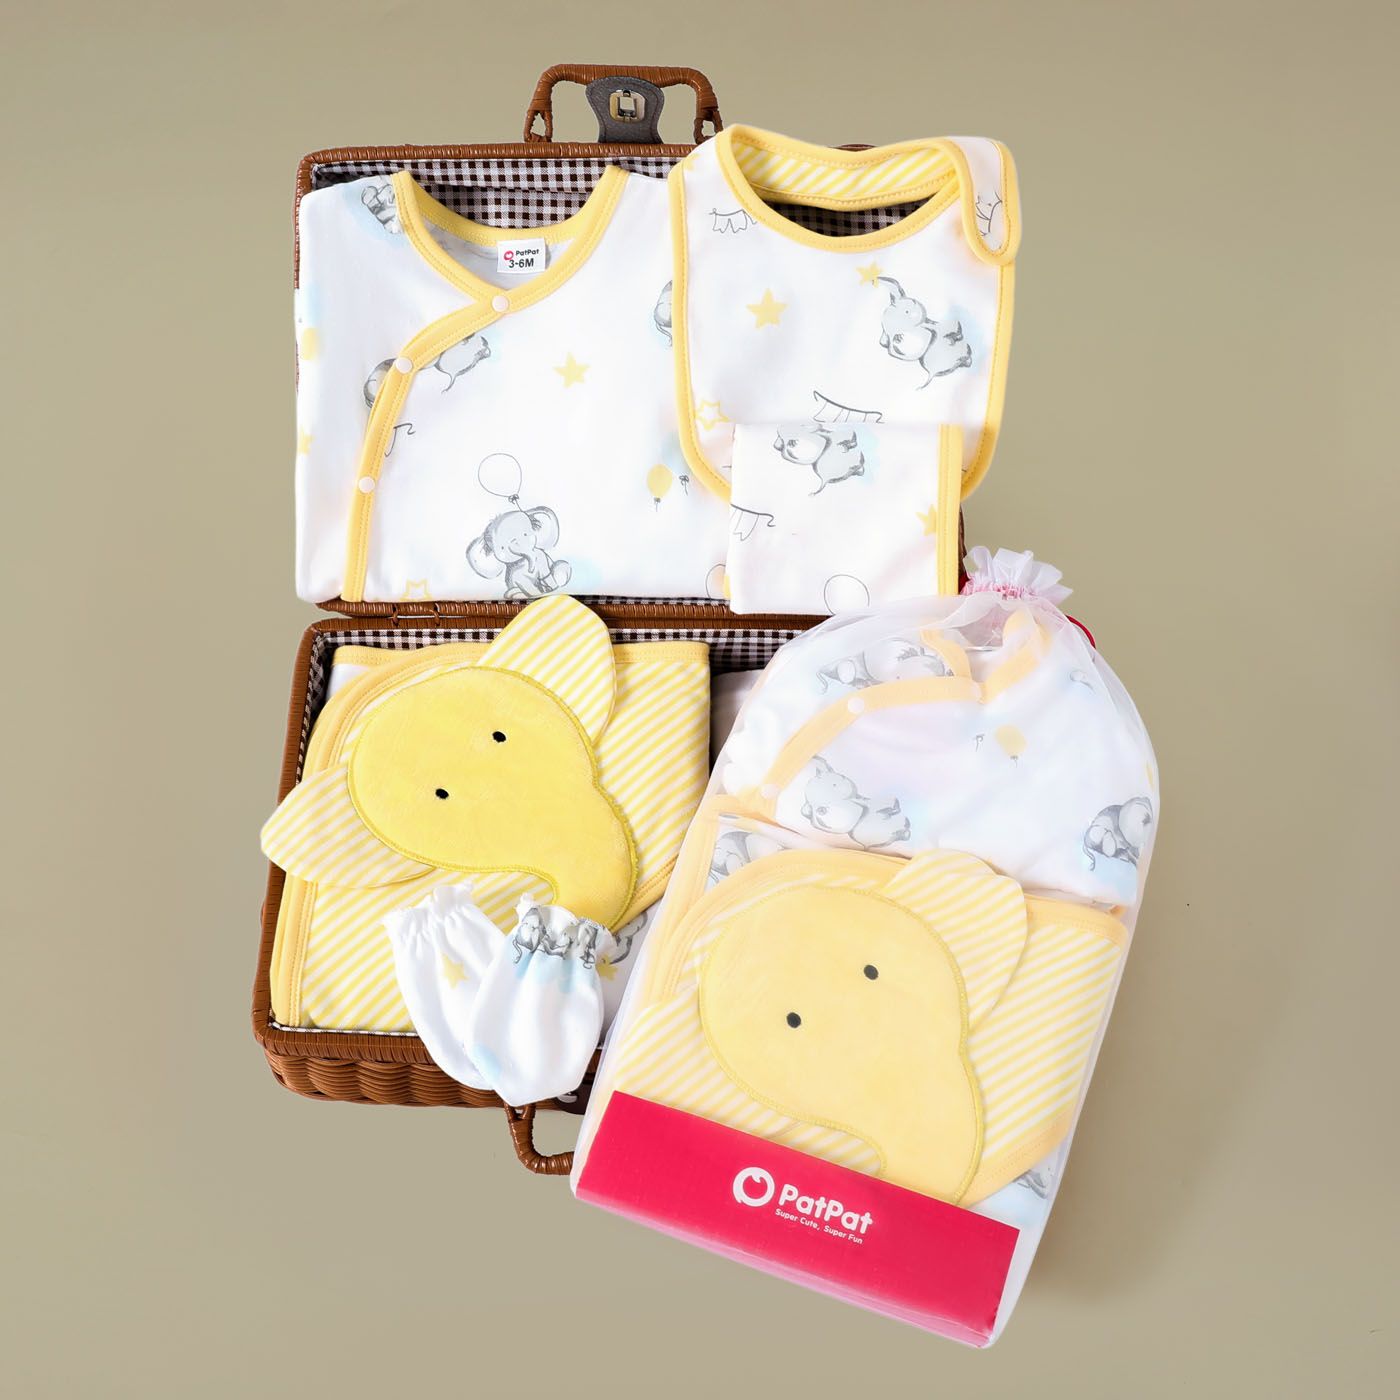 5pcs Baby Boy / Girl 100% Cotton Gift Box Set